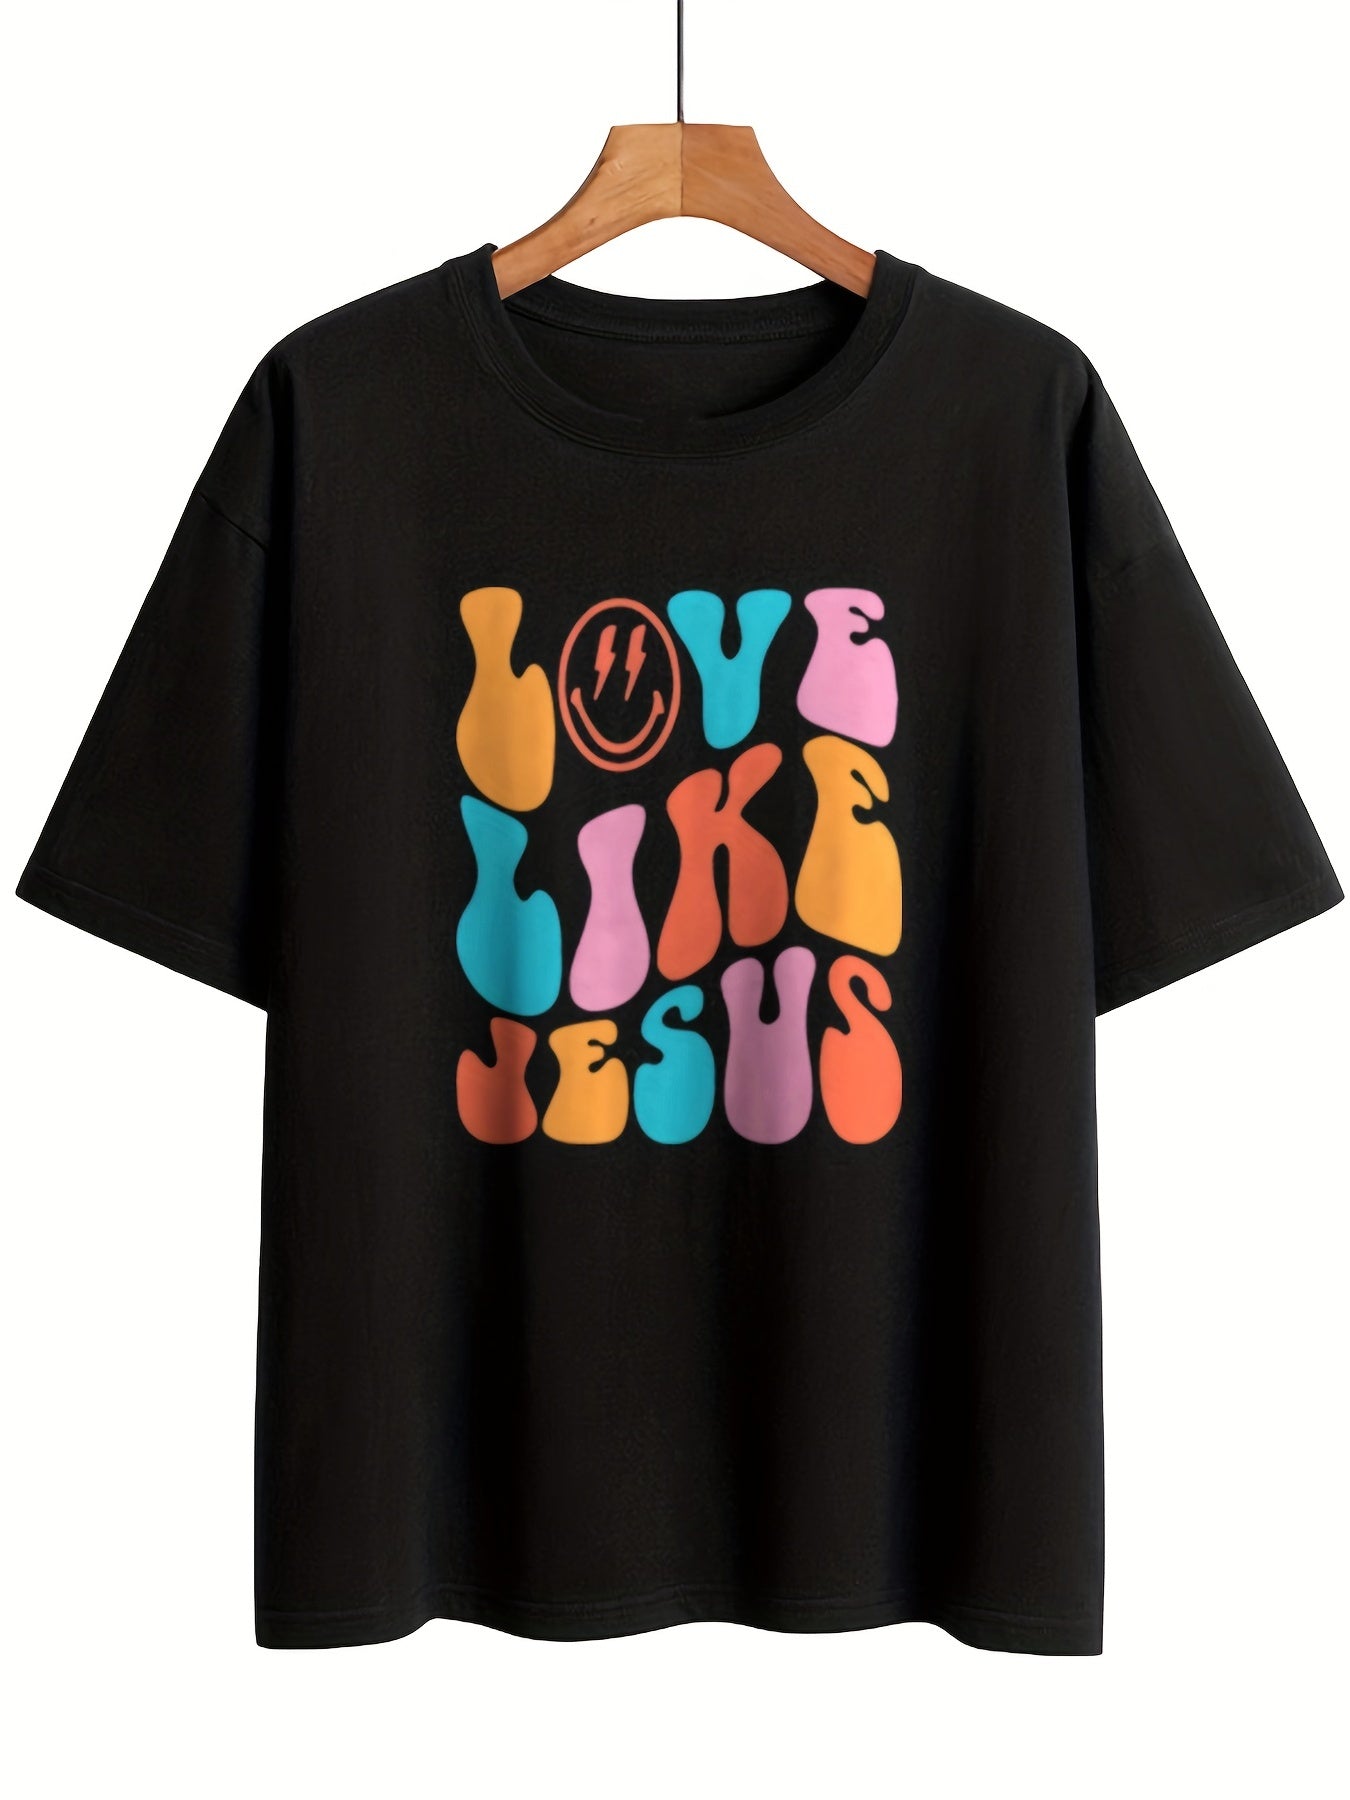 Love Like Jesus Women’s Christian T-shirt claimedbygoddesigns